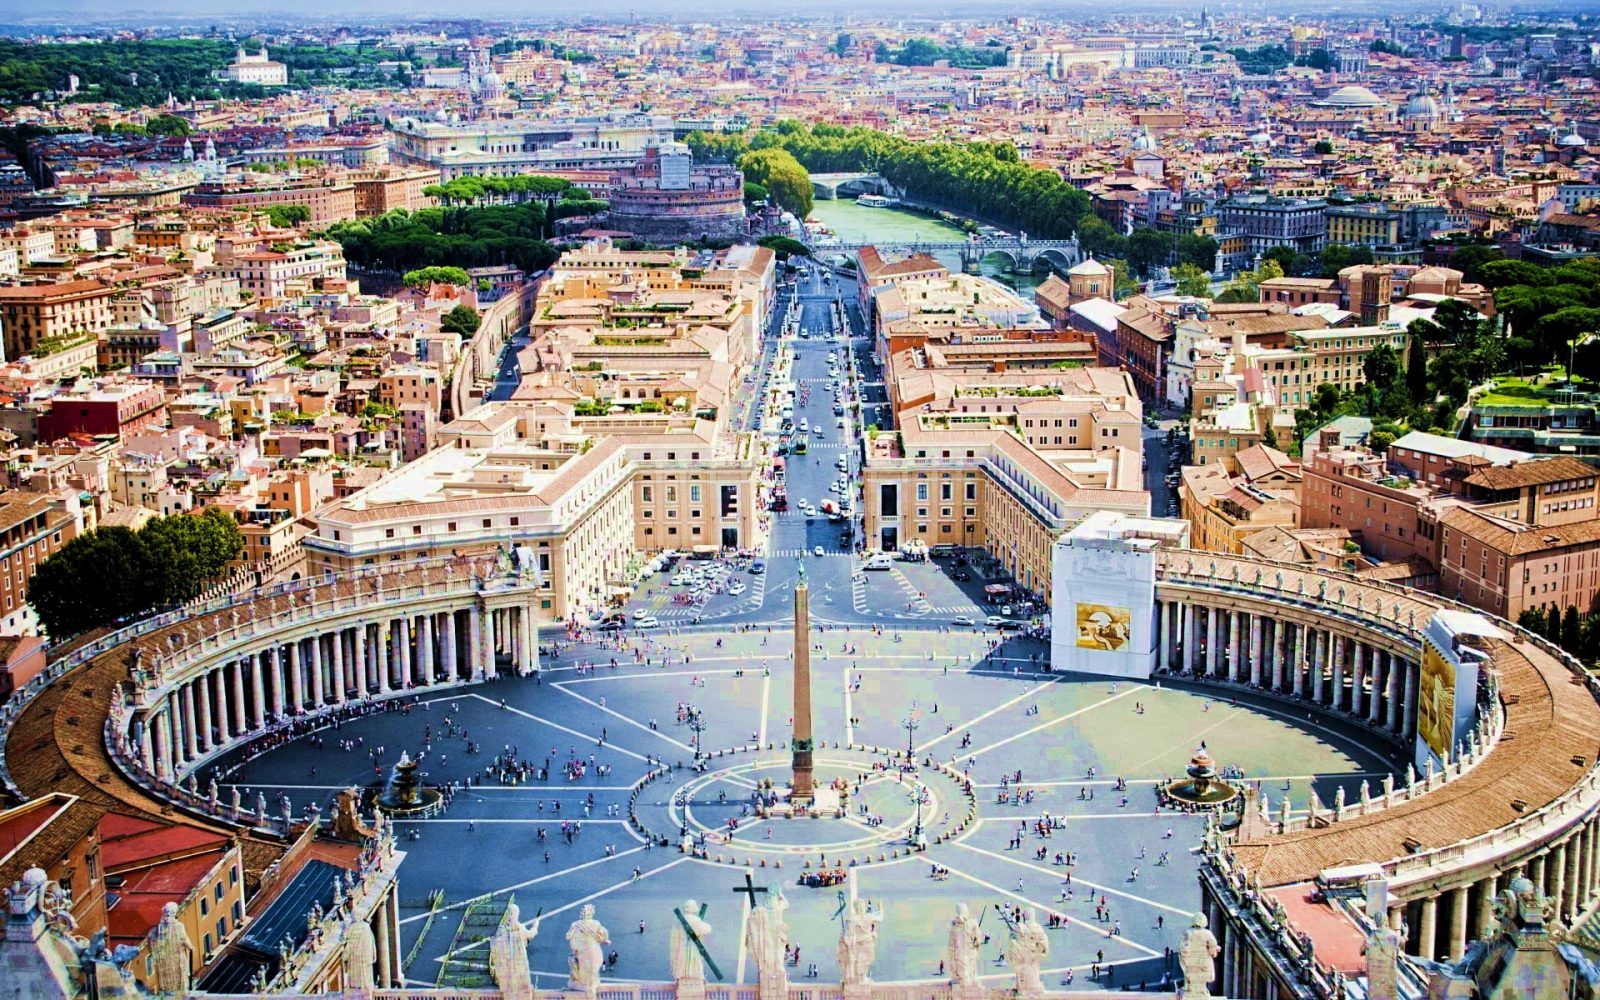 Римский Форум — Форум в центре Древнего Рима, вместе с прилегающими зданиями. Первоначально на нём размещался рынок, позже он включил в себя комиций, курию, и приобрёл политические функции…